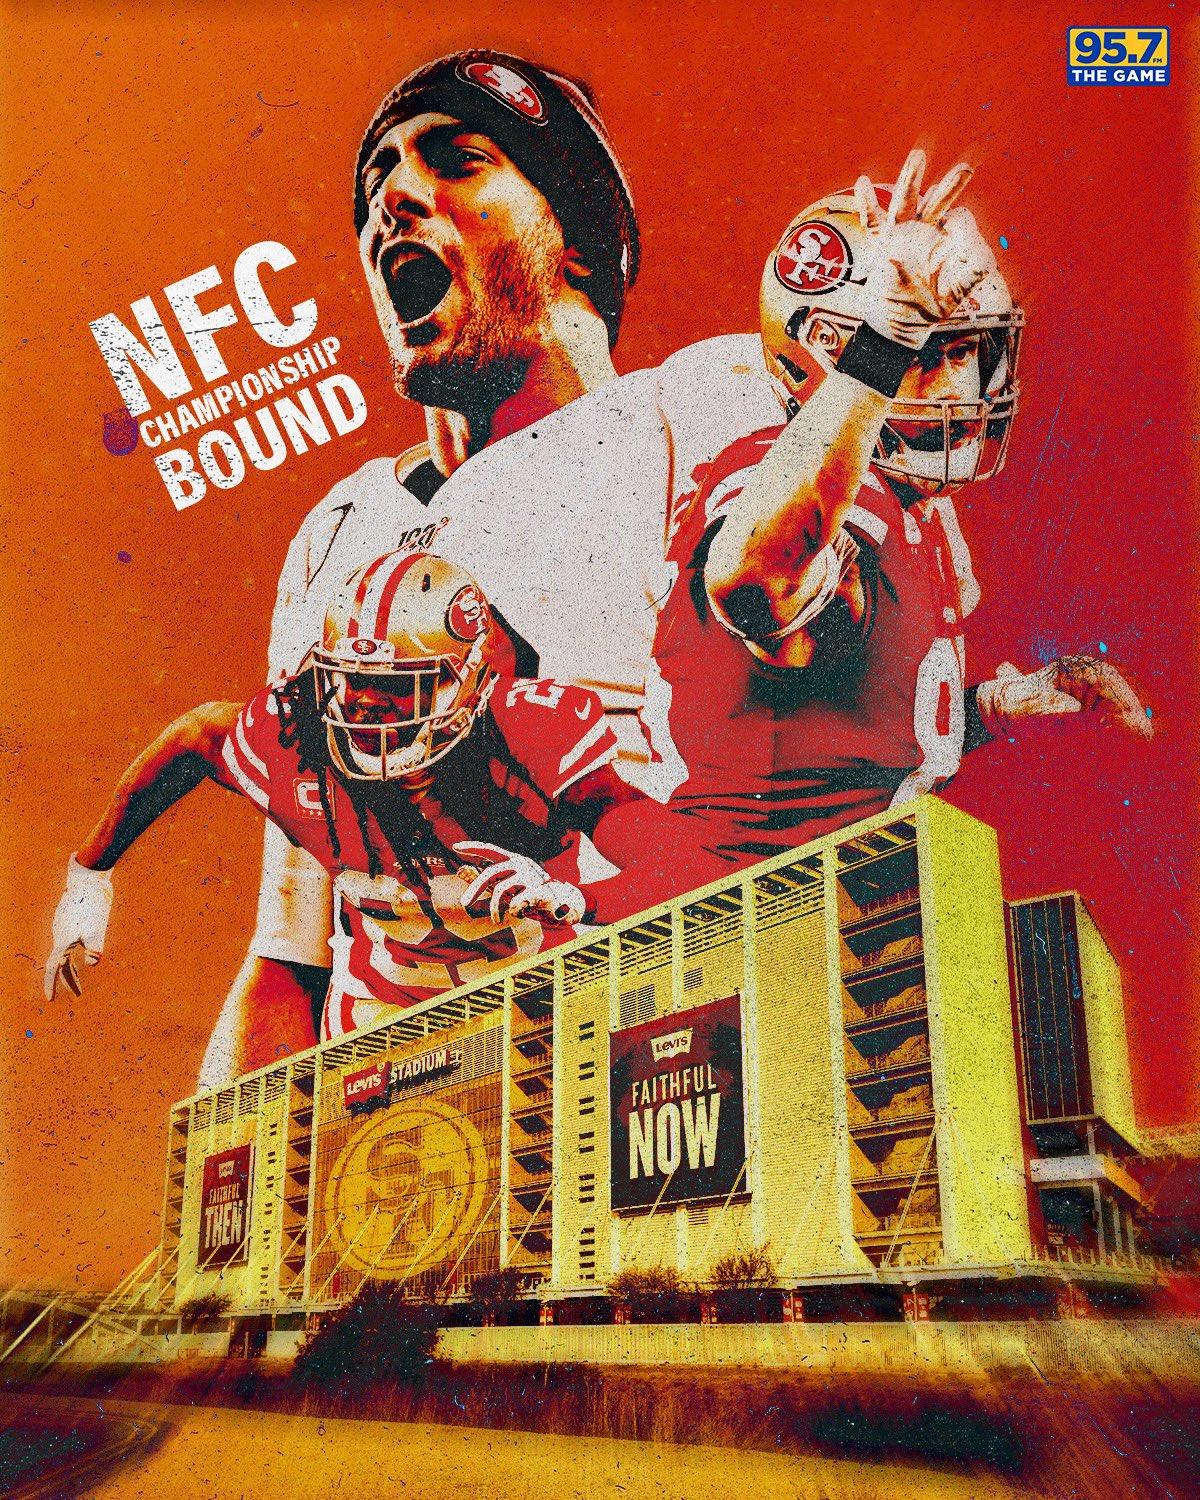 San Francisco 49ers HD wallpaper